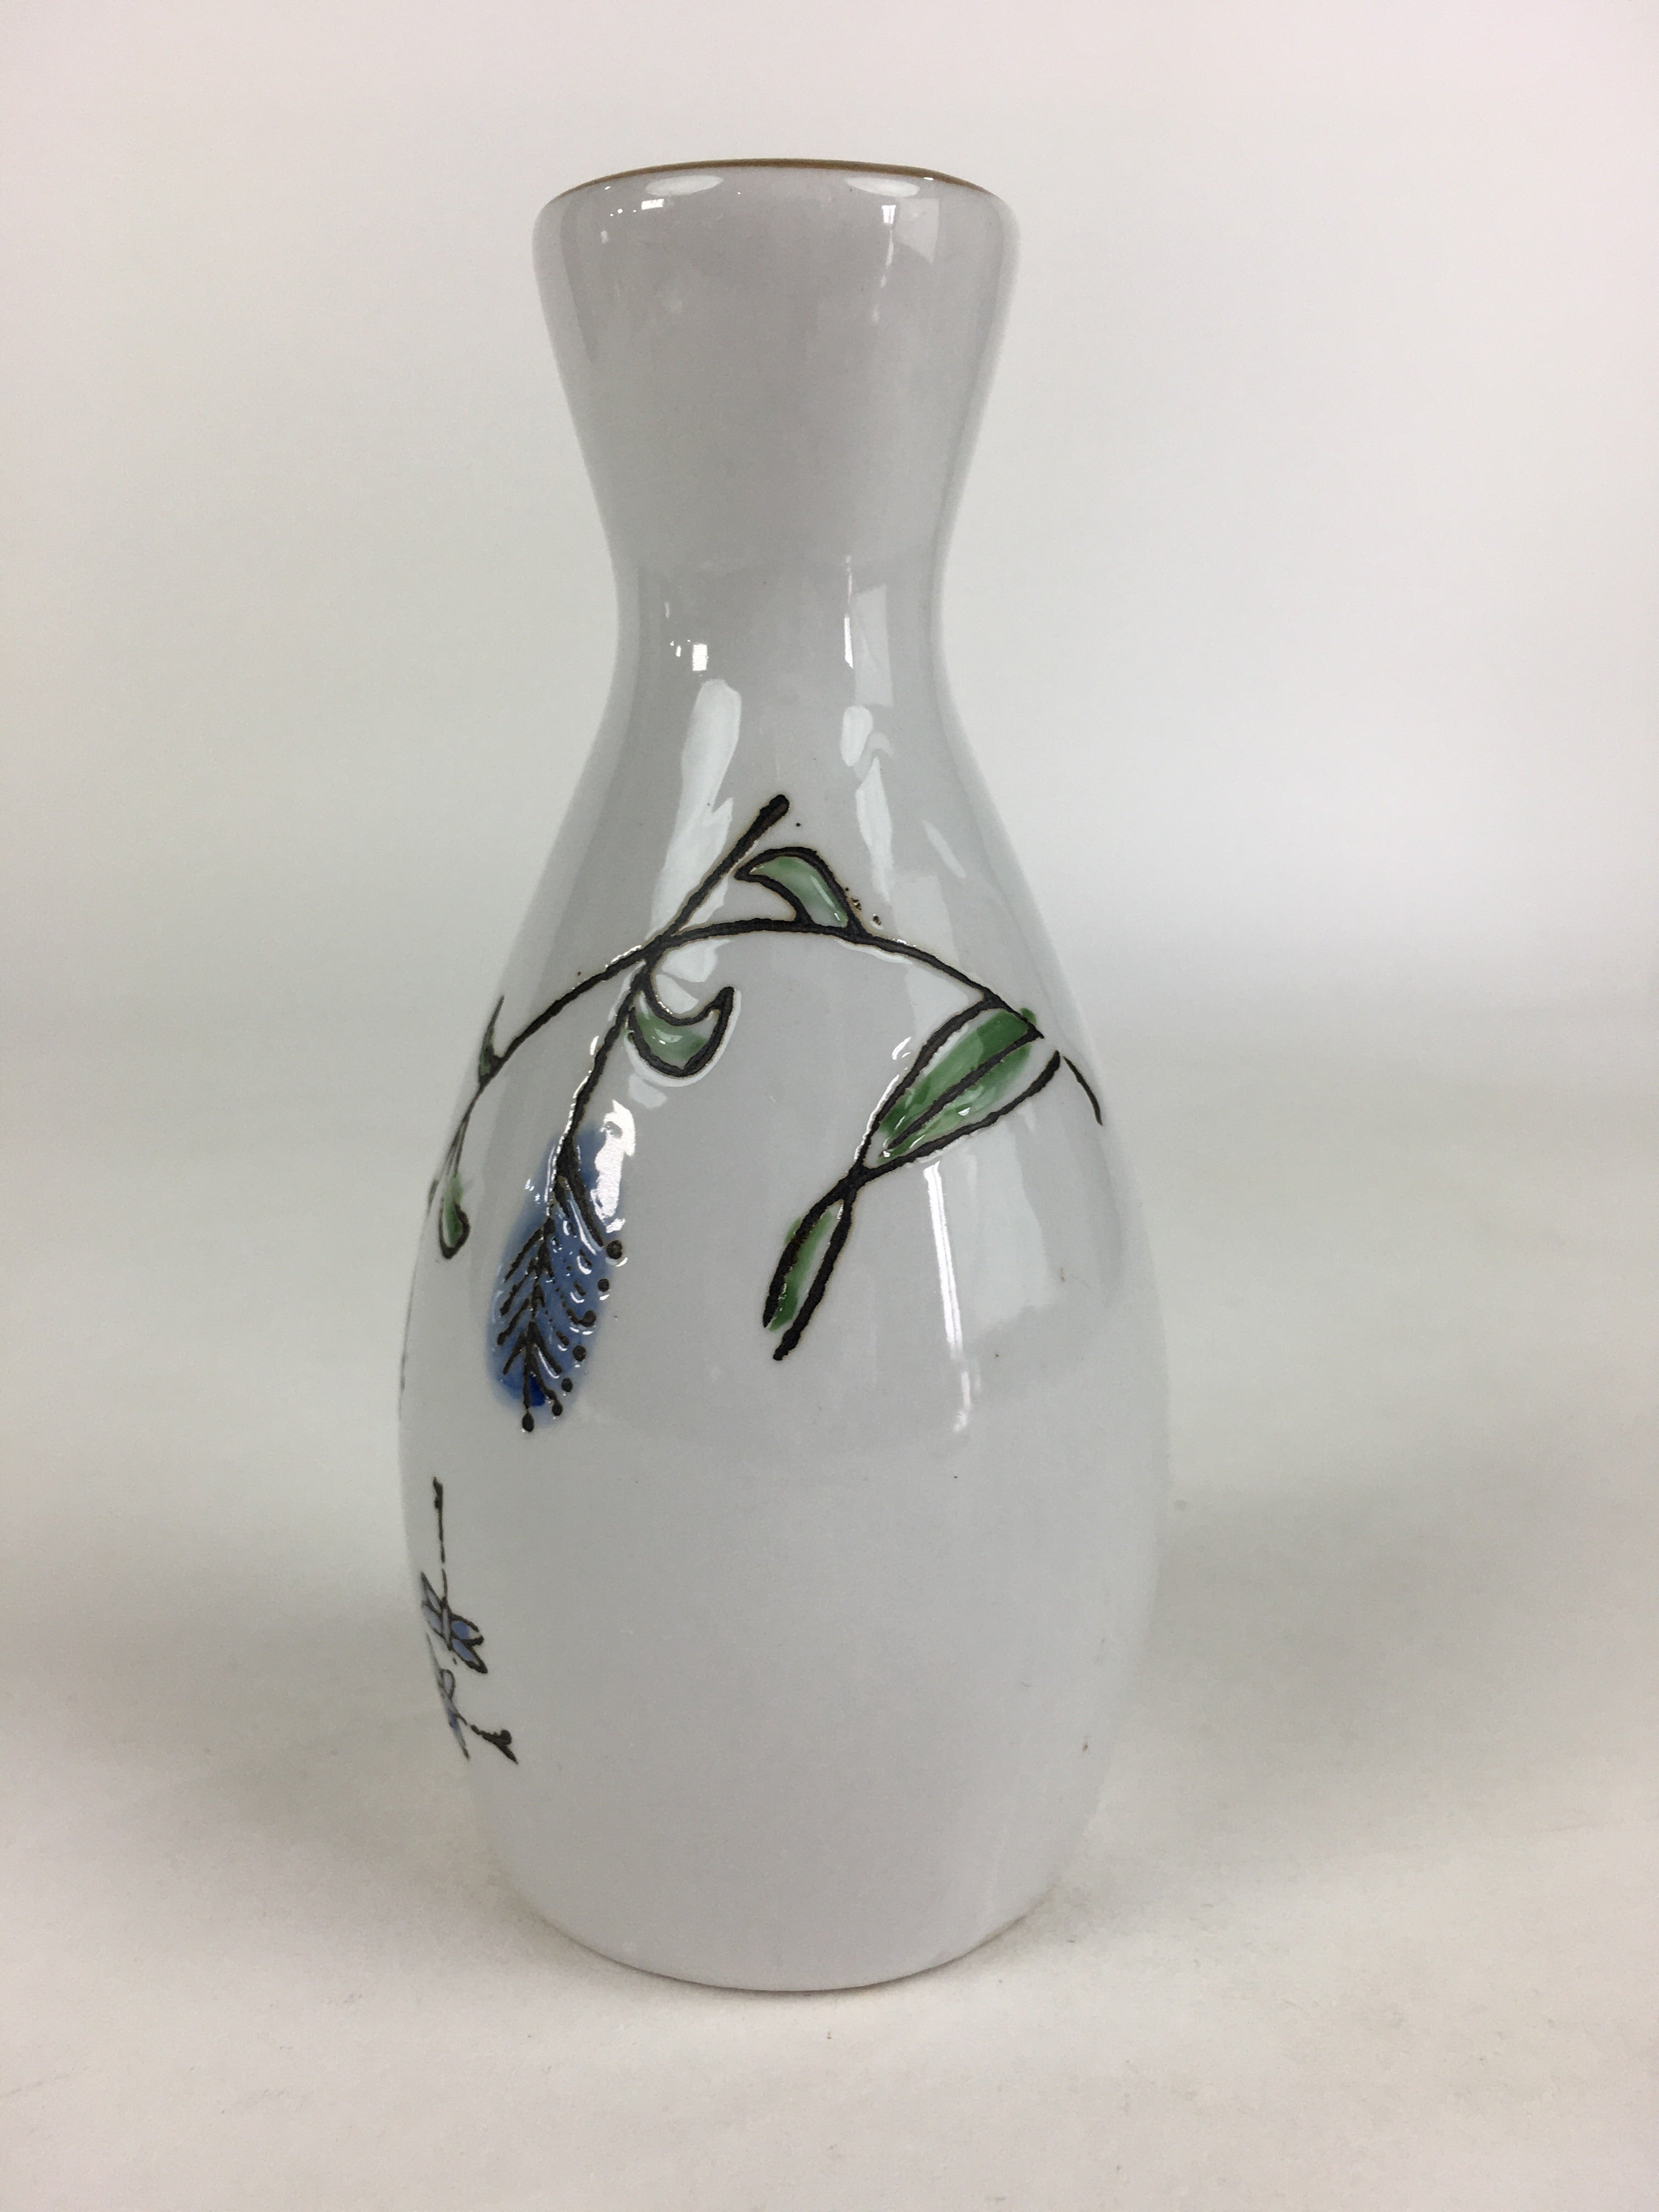 Japanese Porcelain Sake Bottle Vtg Blue Flower Butterfly Tokkuri White TS394